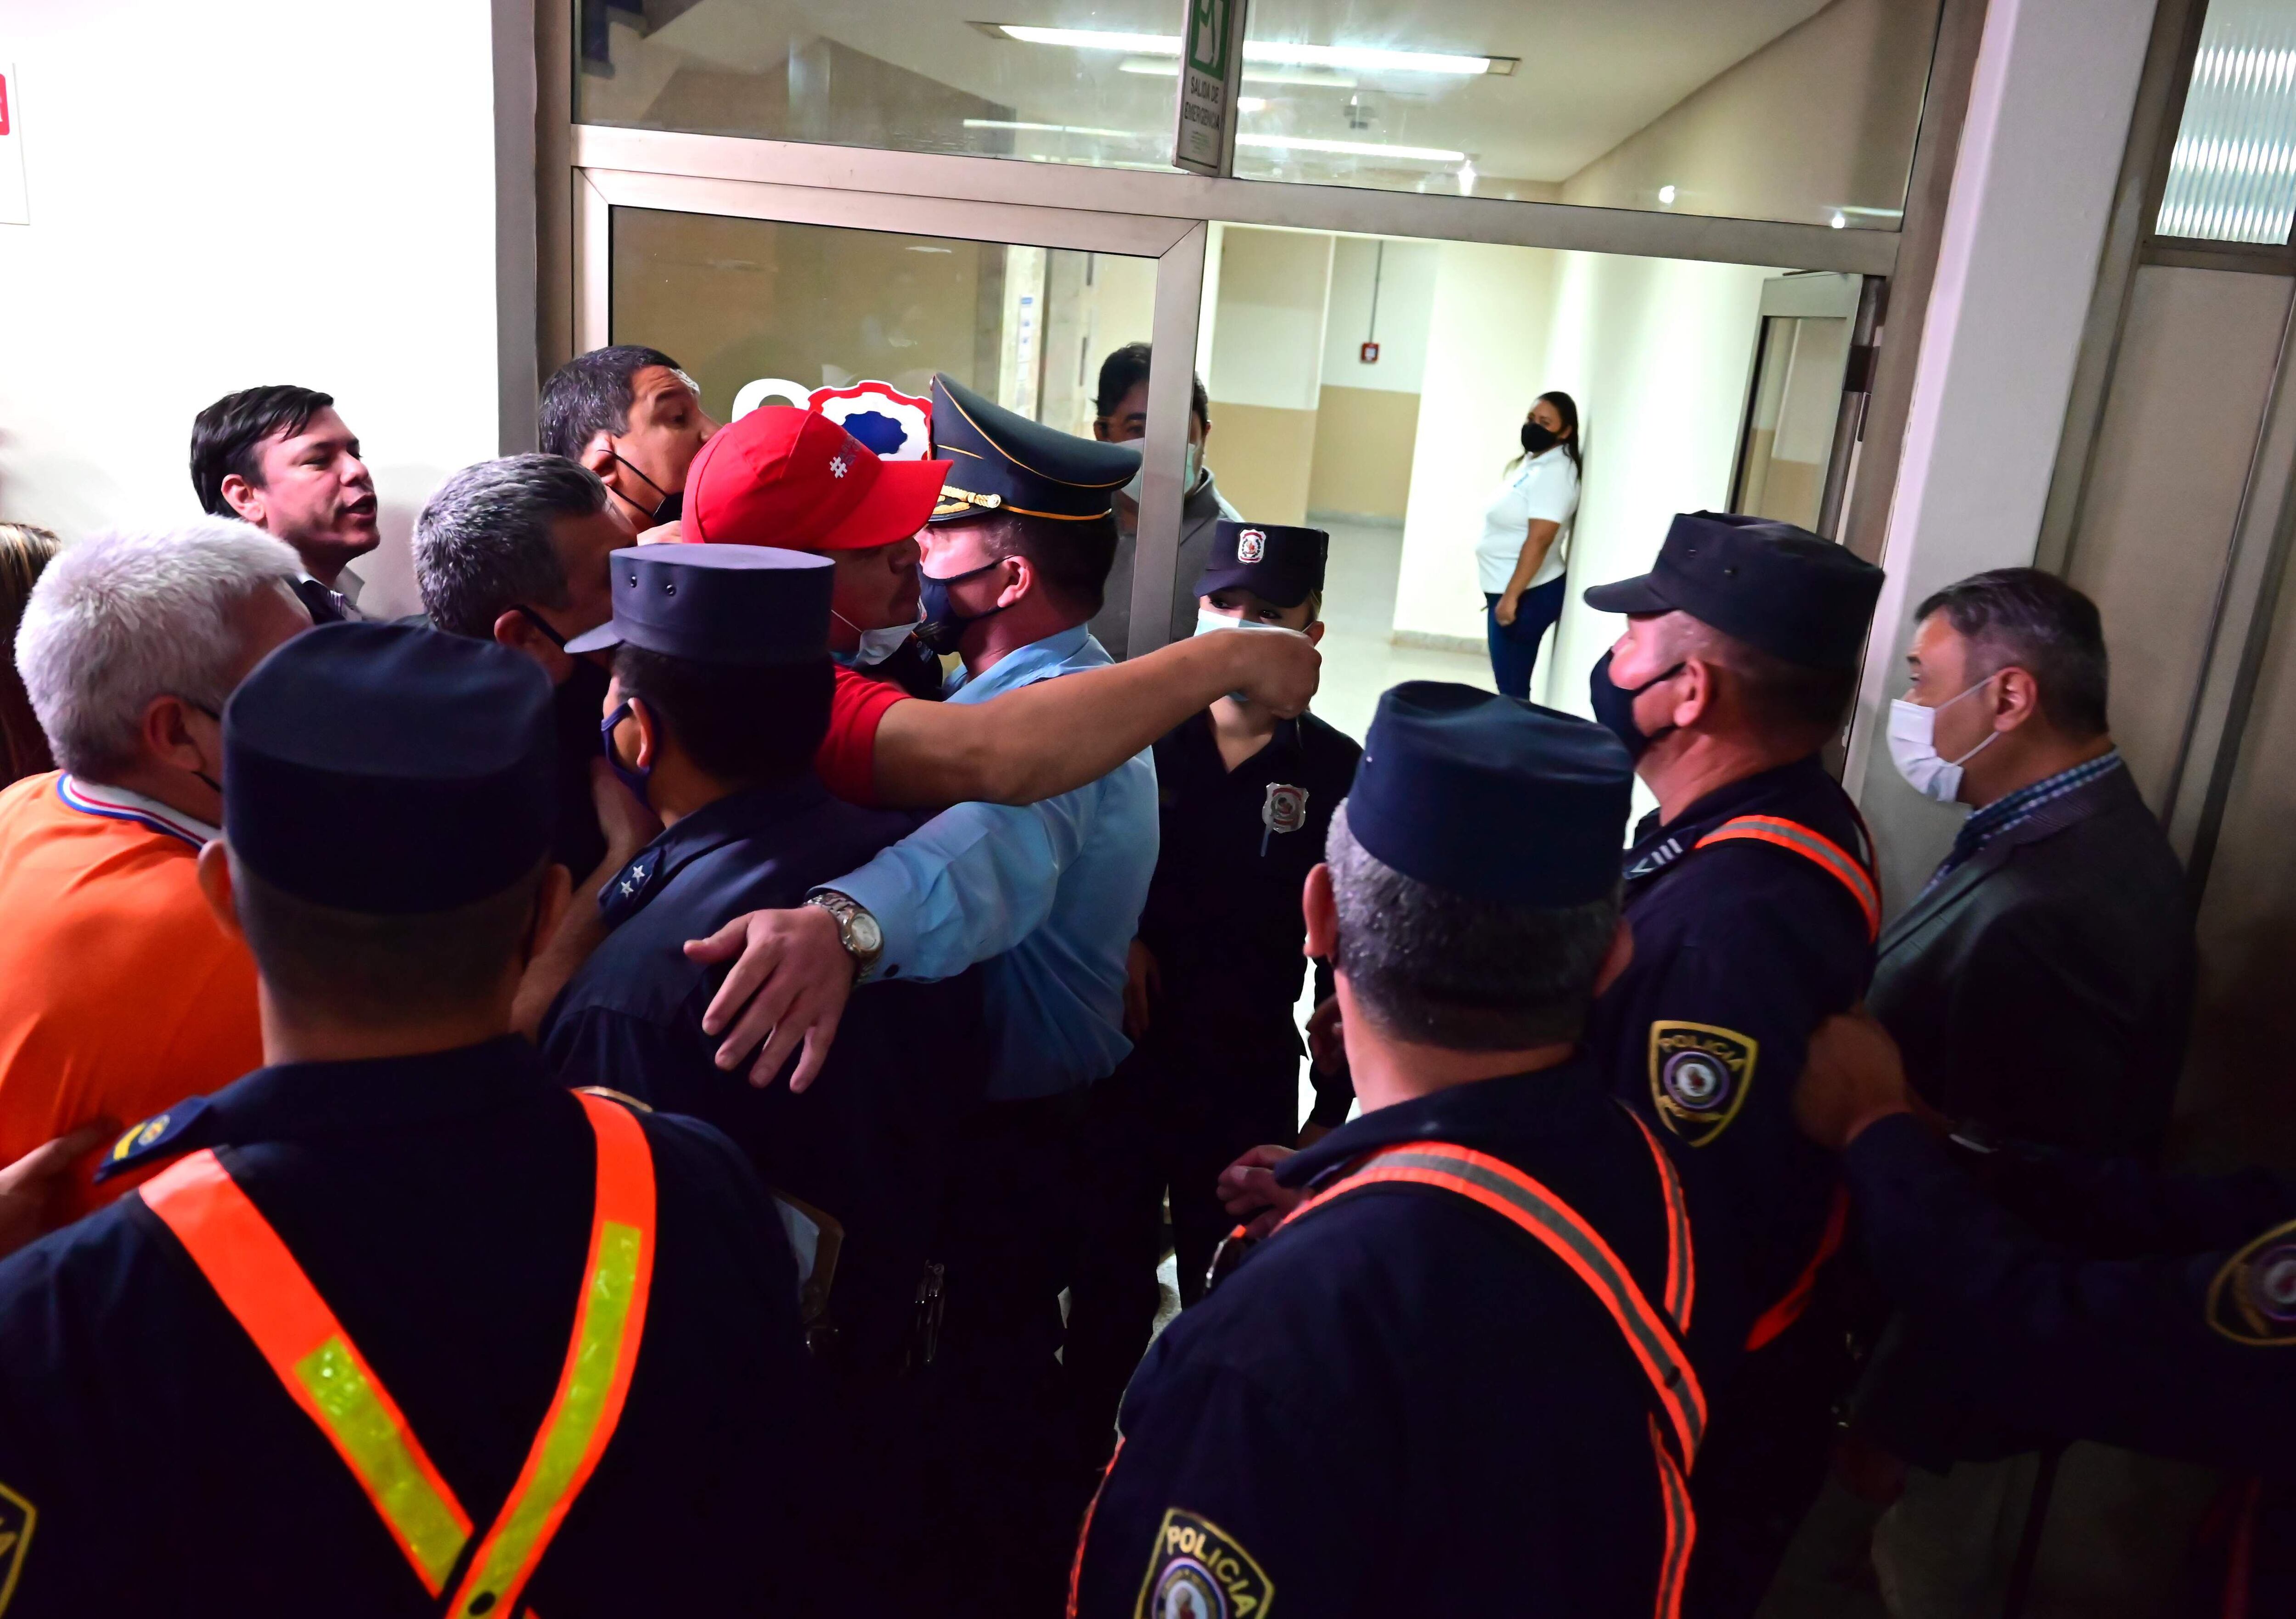 A la derecha, custodiado por policías se retira Humberto Blasco, presidente de la Junta asuncena. A la izquierda los funcionarios. Uno de ellos le grita y señala (quepi rojo) y posteriormente rompe el vidrio de la puerta. 